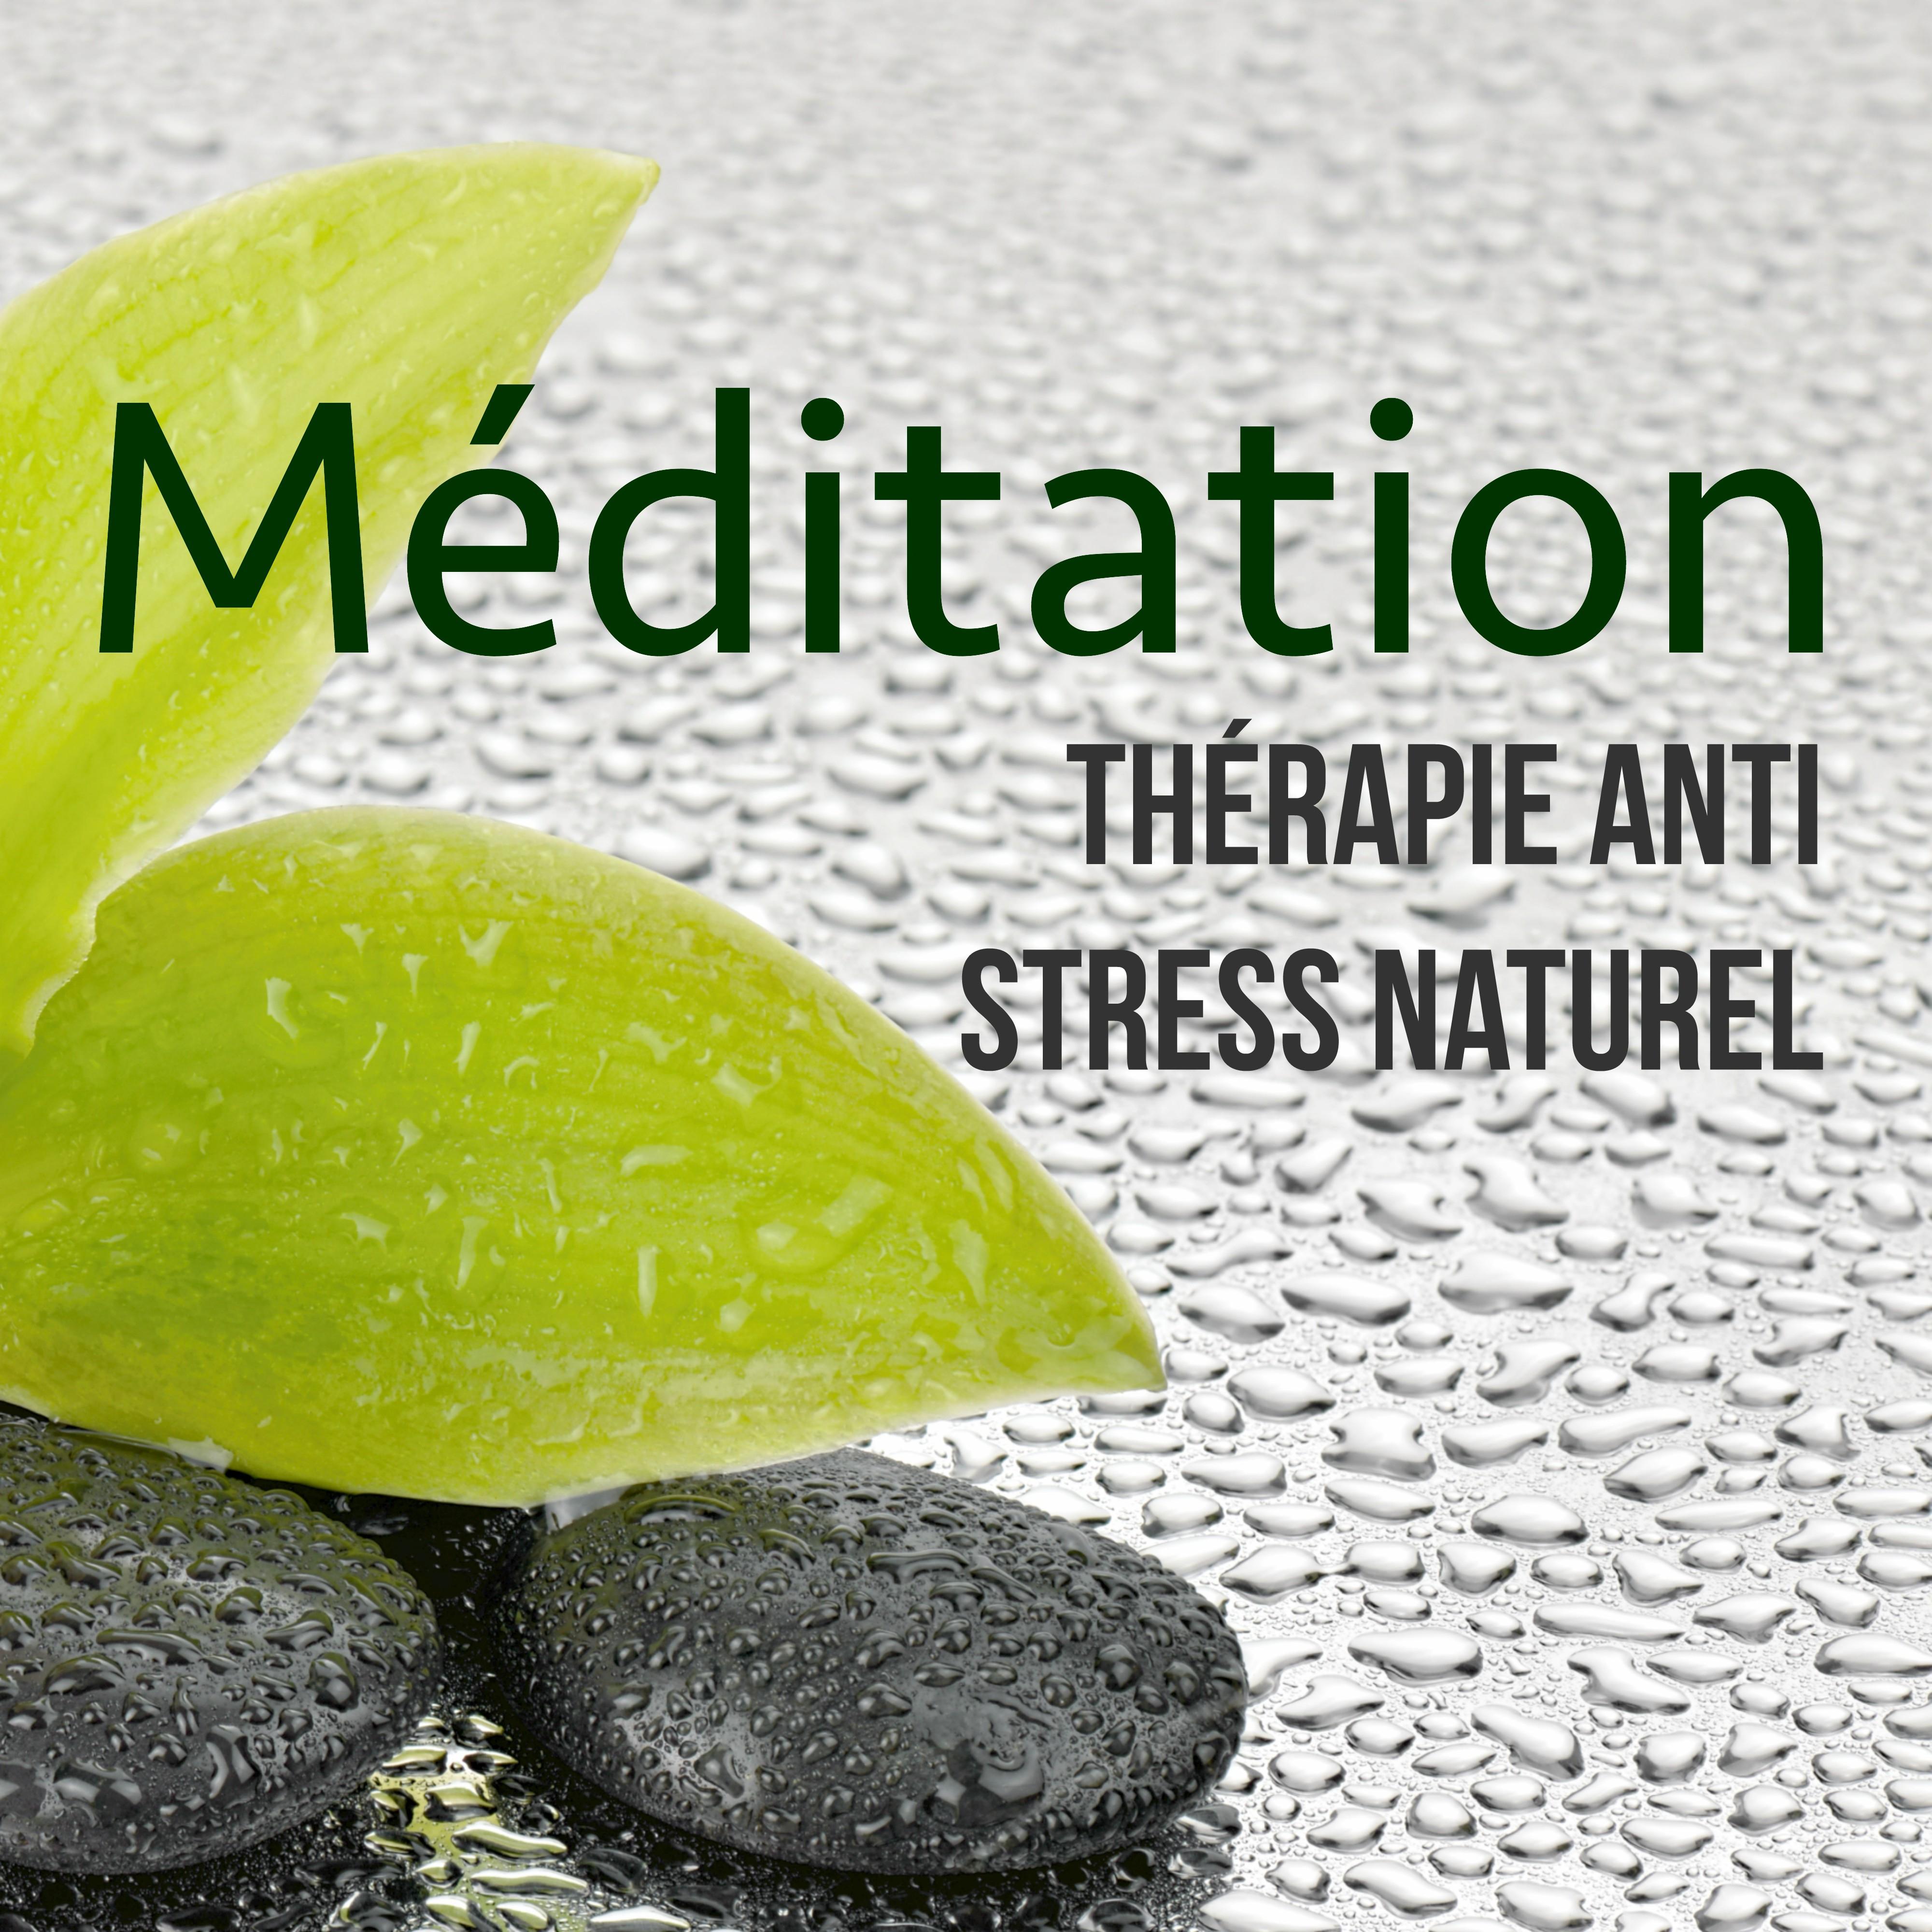 Méditation - Thérapie Anti Stress Naturel: Musique Relaxant pour Méditer et Se Détendre, Musicothérapie et Sophrologie pour Mieux Vivre